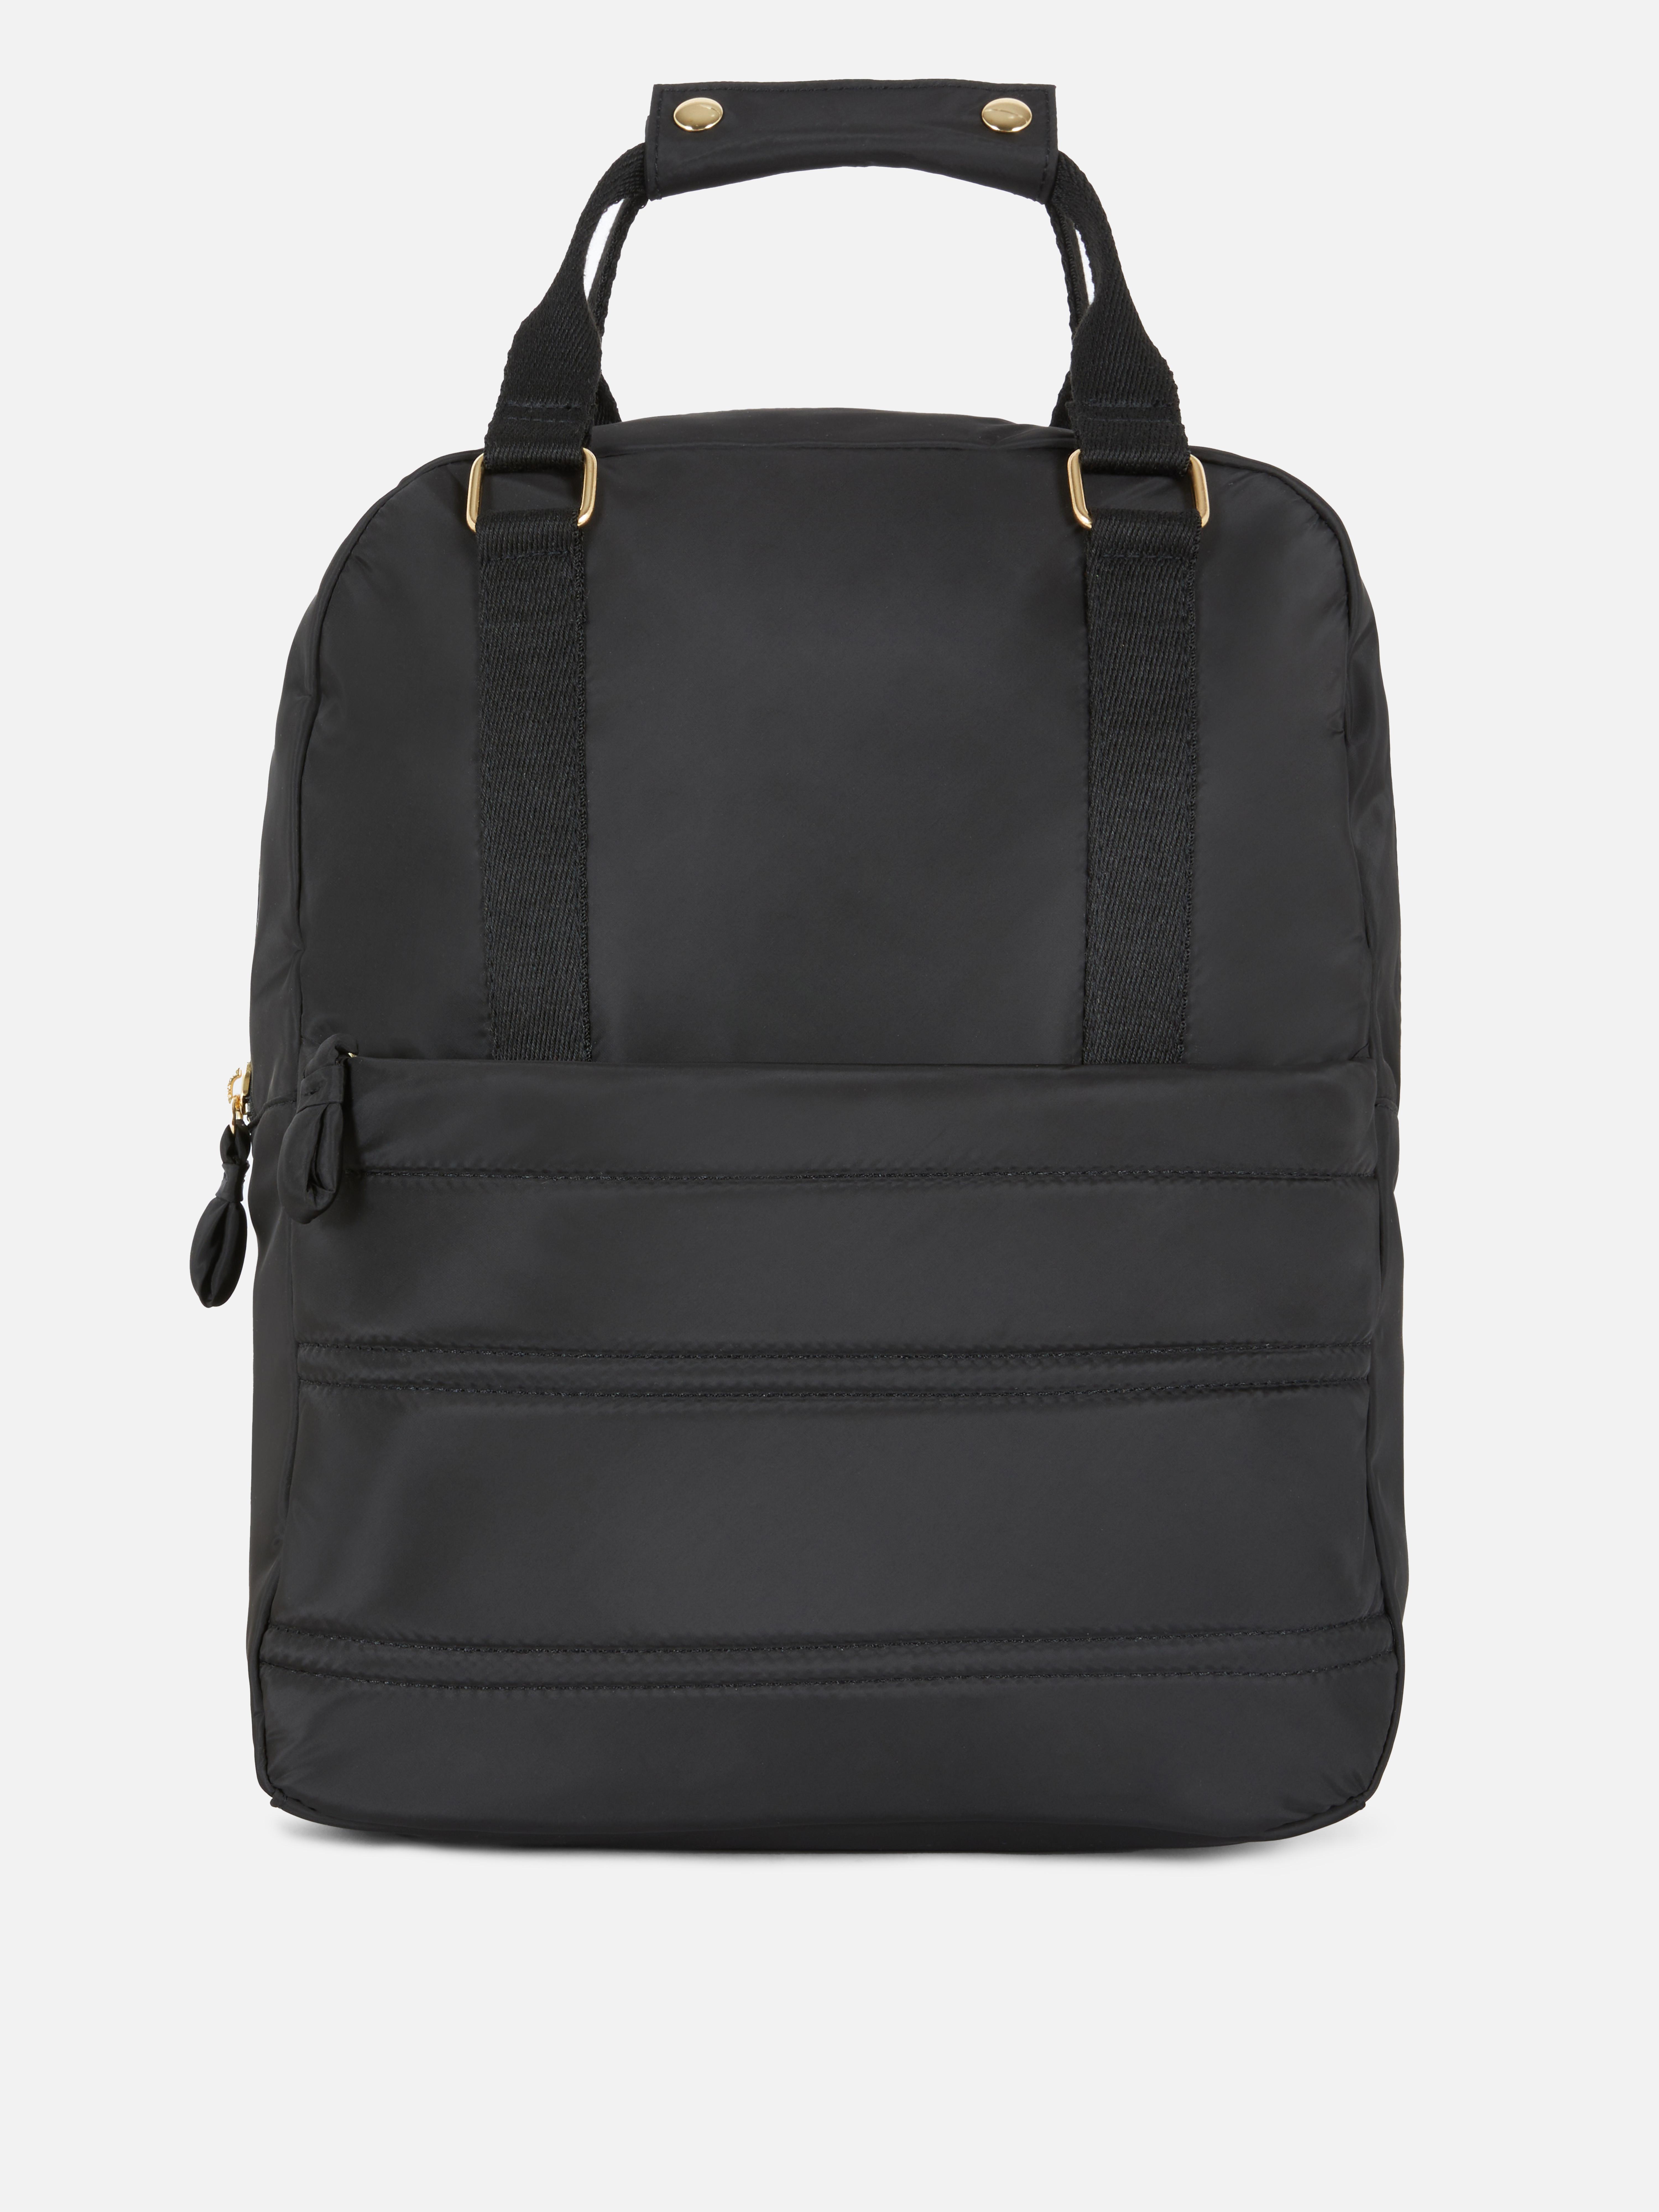 Top Handle Duffle Bag Black